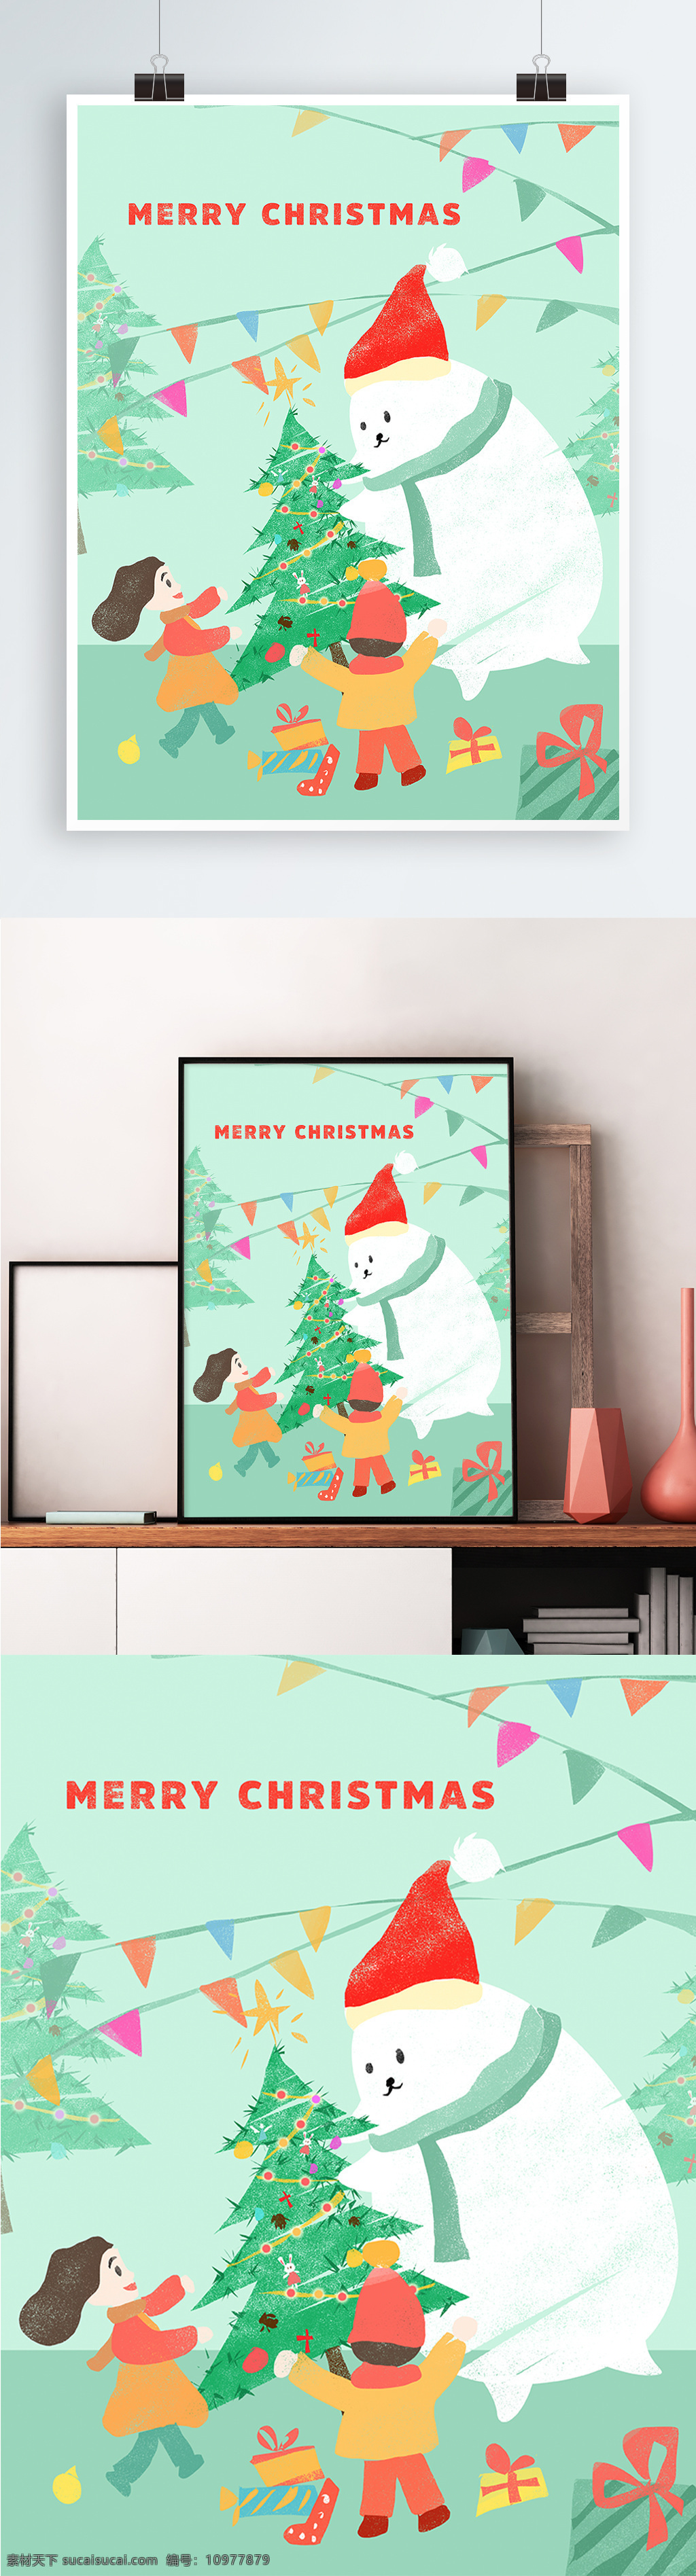 清新 绿色 可爱 雪人 玩耍 圣诞节 手绘 插画 海报 圣诞 唯美 卡通 圣诞树 白熊 儿童